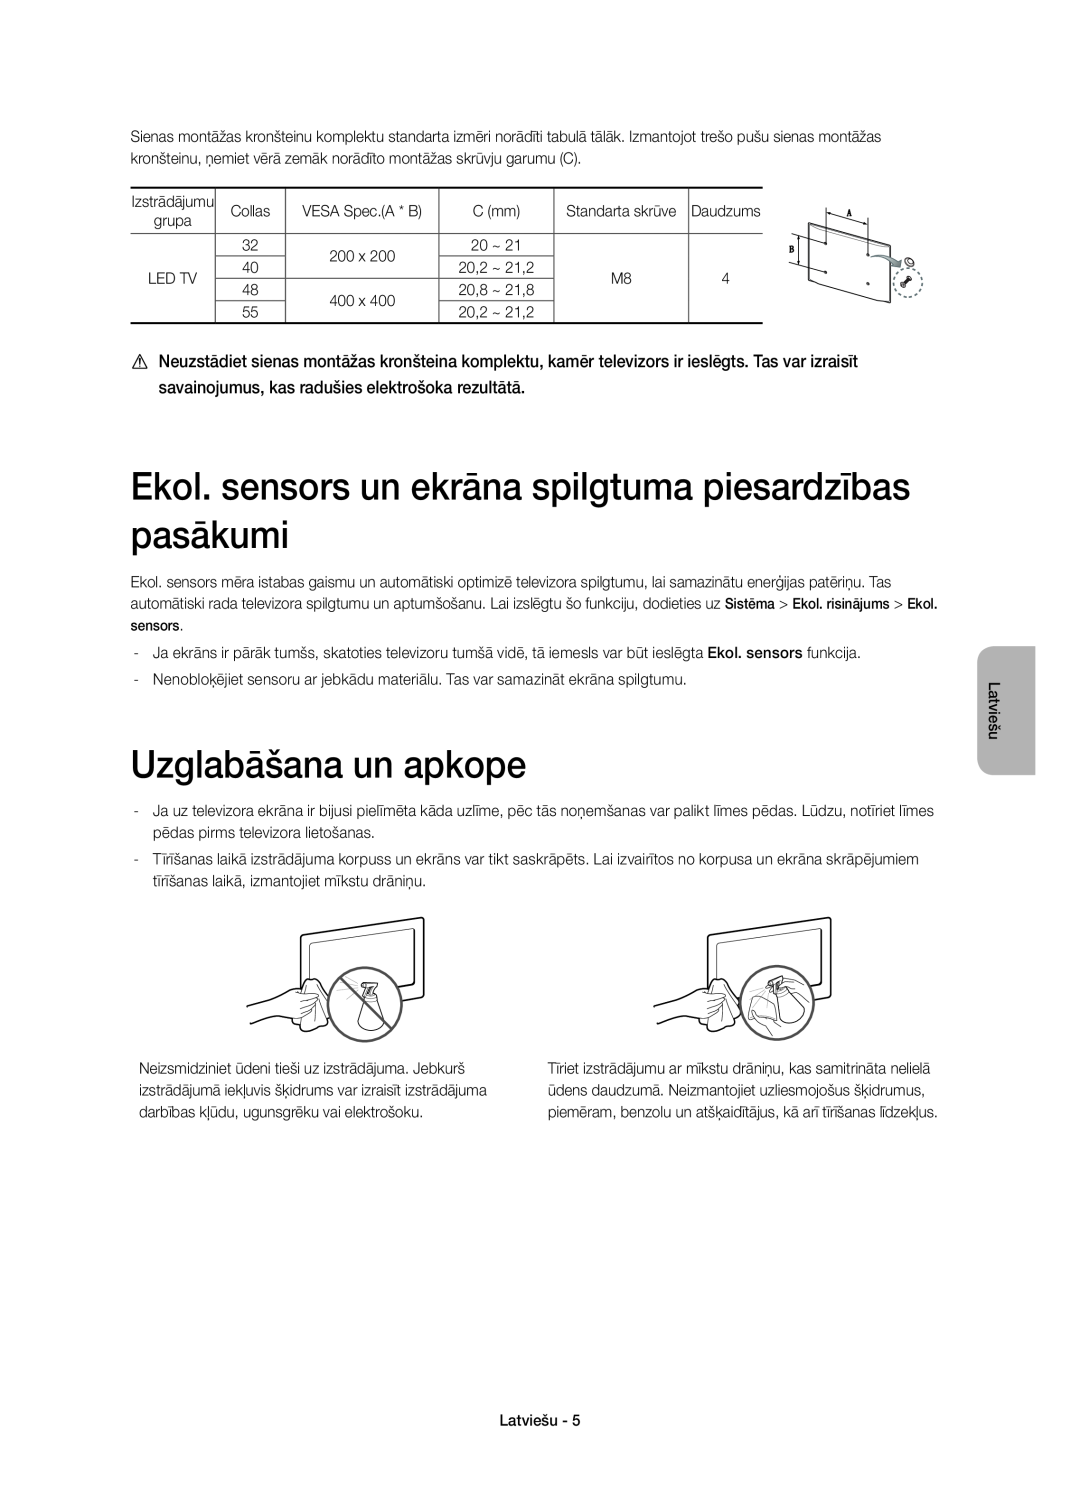 Samsung UE40H6410SSXXN, UE55H6410SSXXH manual Ekol. sensors un ekrāna spilgtuma piesardzības pasākumi, Uzglabāšana un apkope 